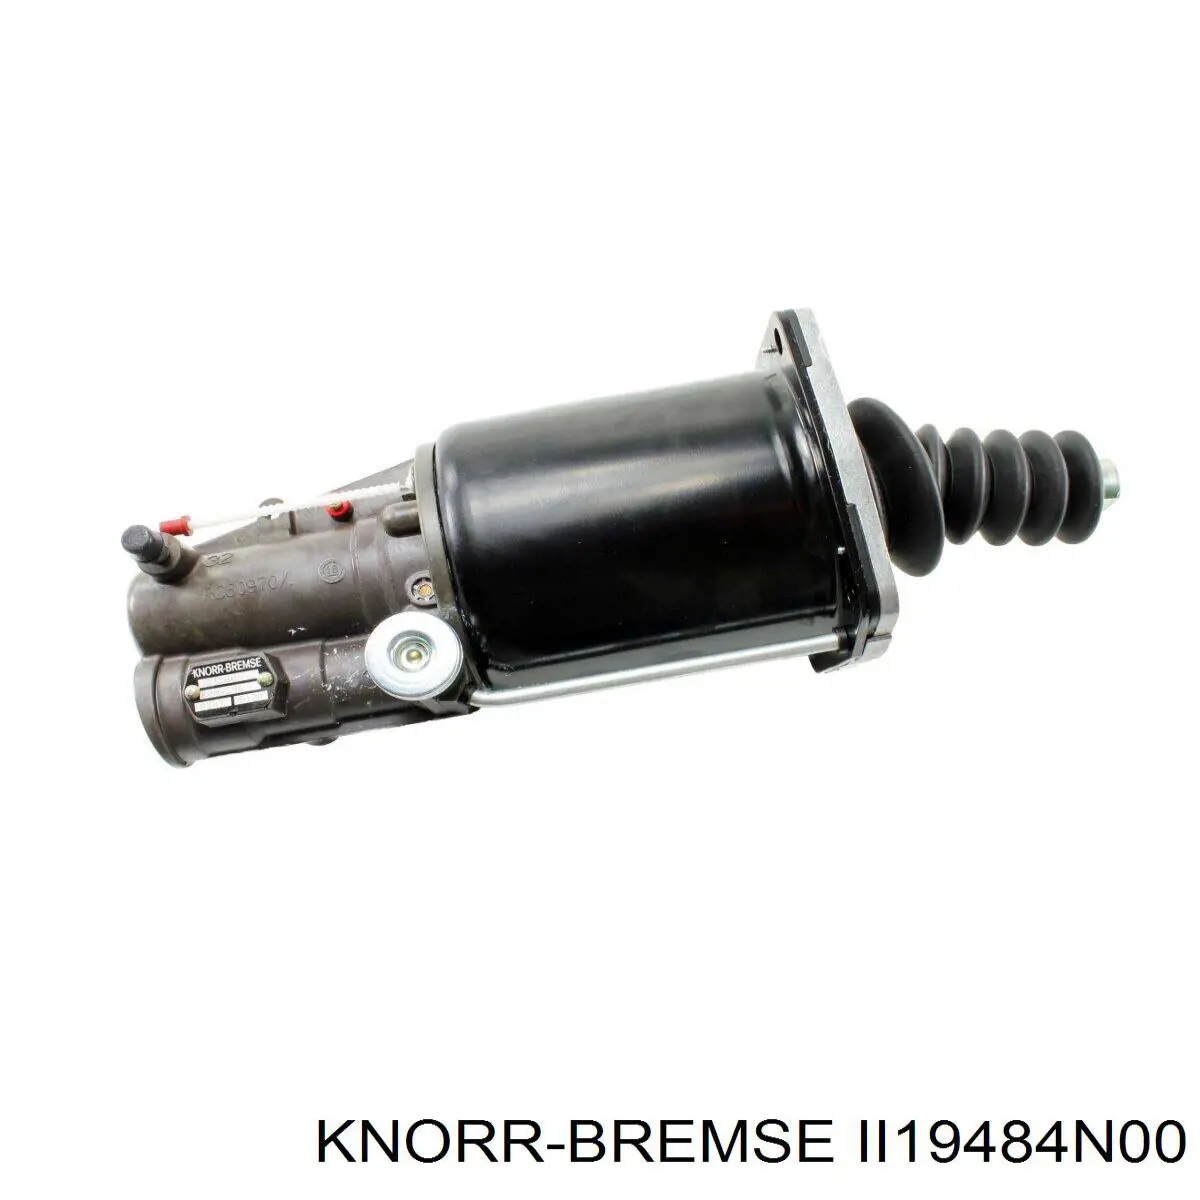 II19484N00 Knorr-bremse deshumificador de sistema neumatico